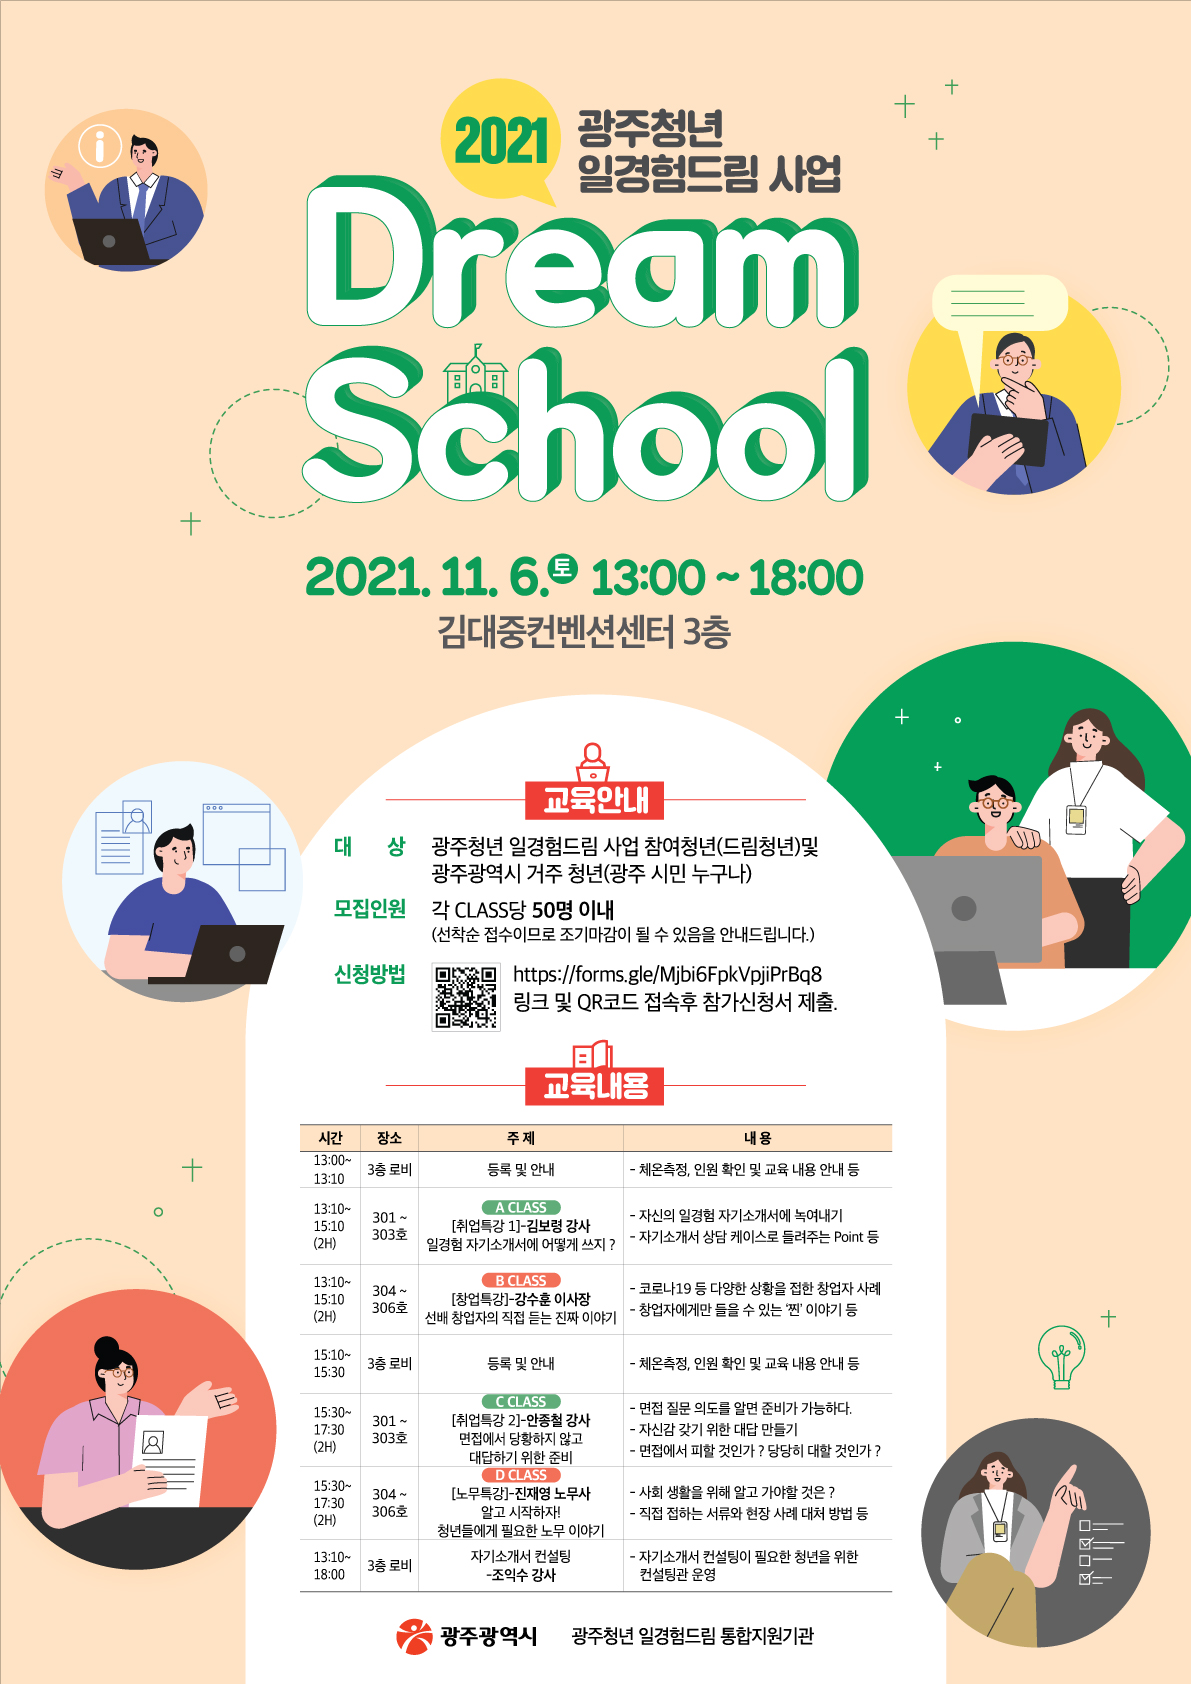 2021년도 광주청년 일경험드림 Dream School